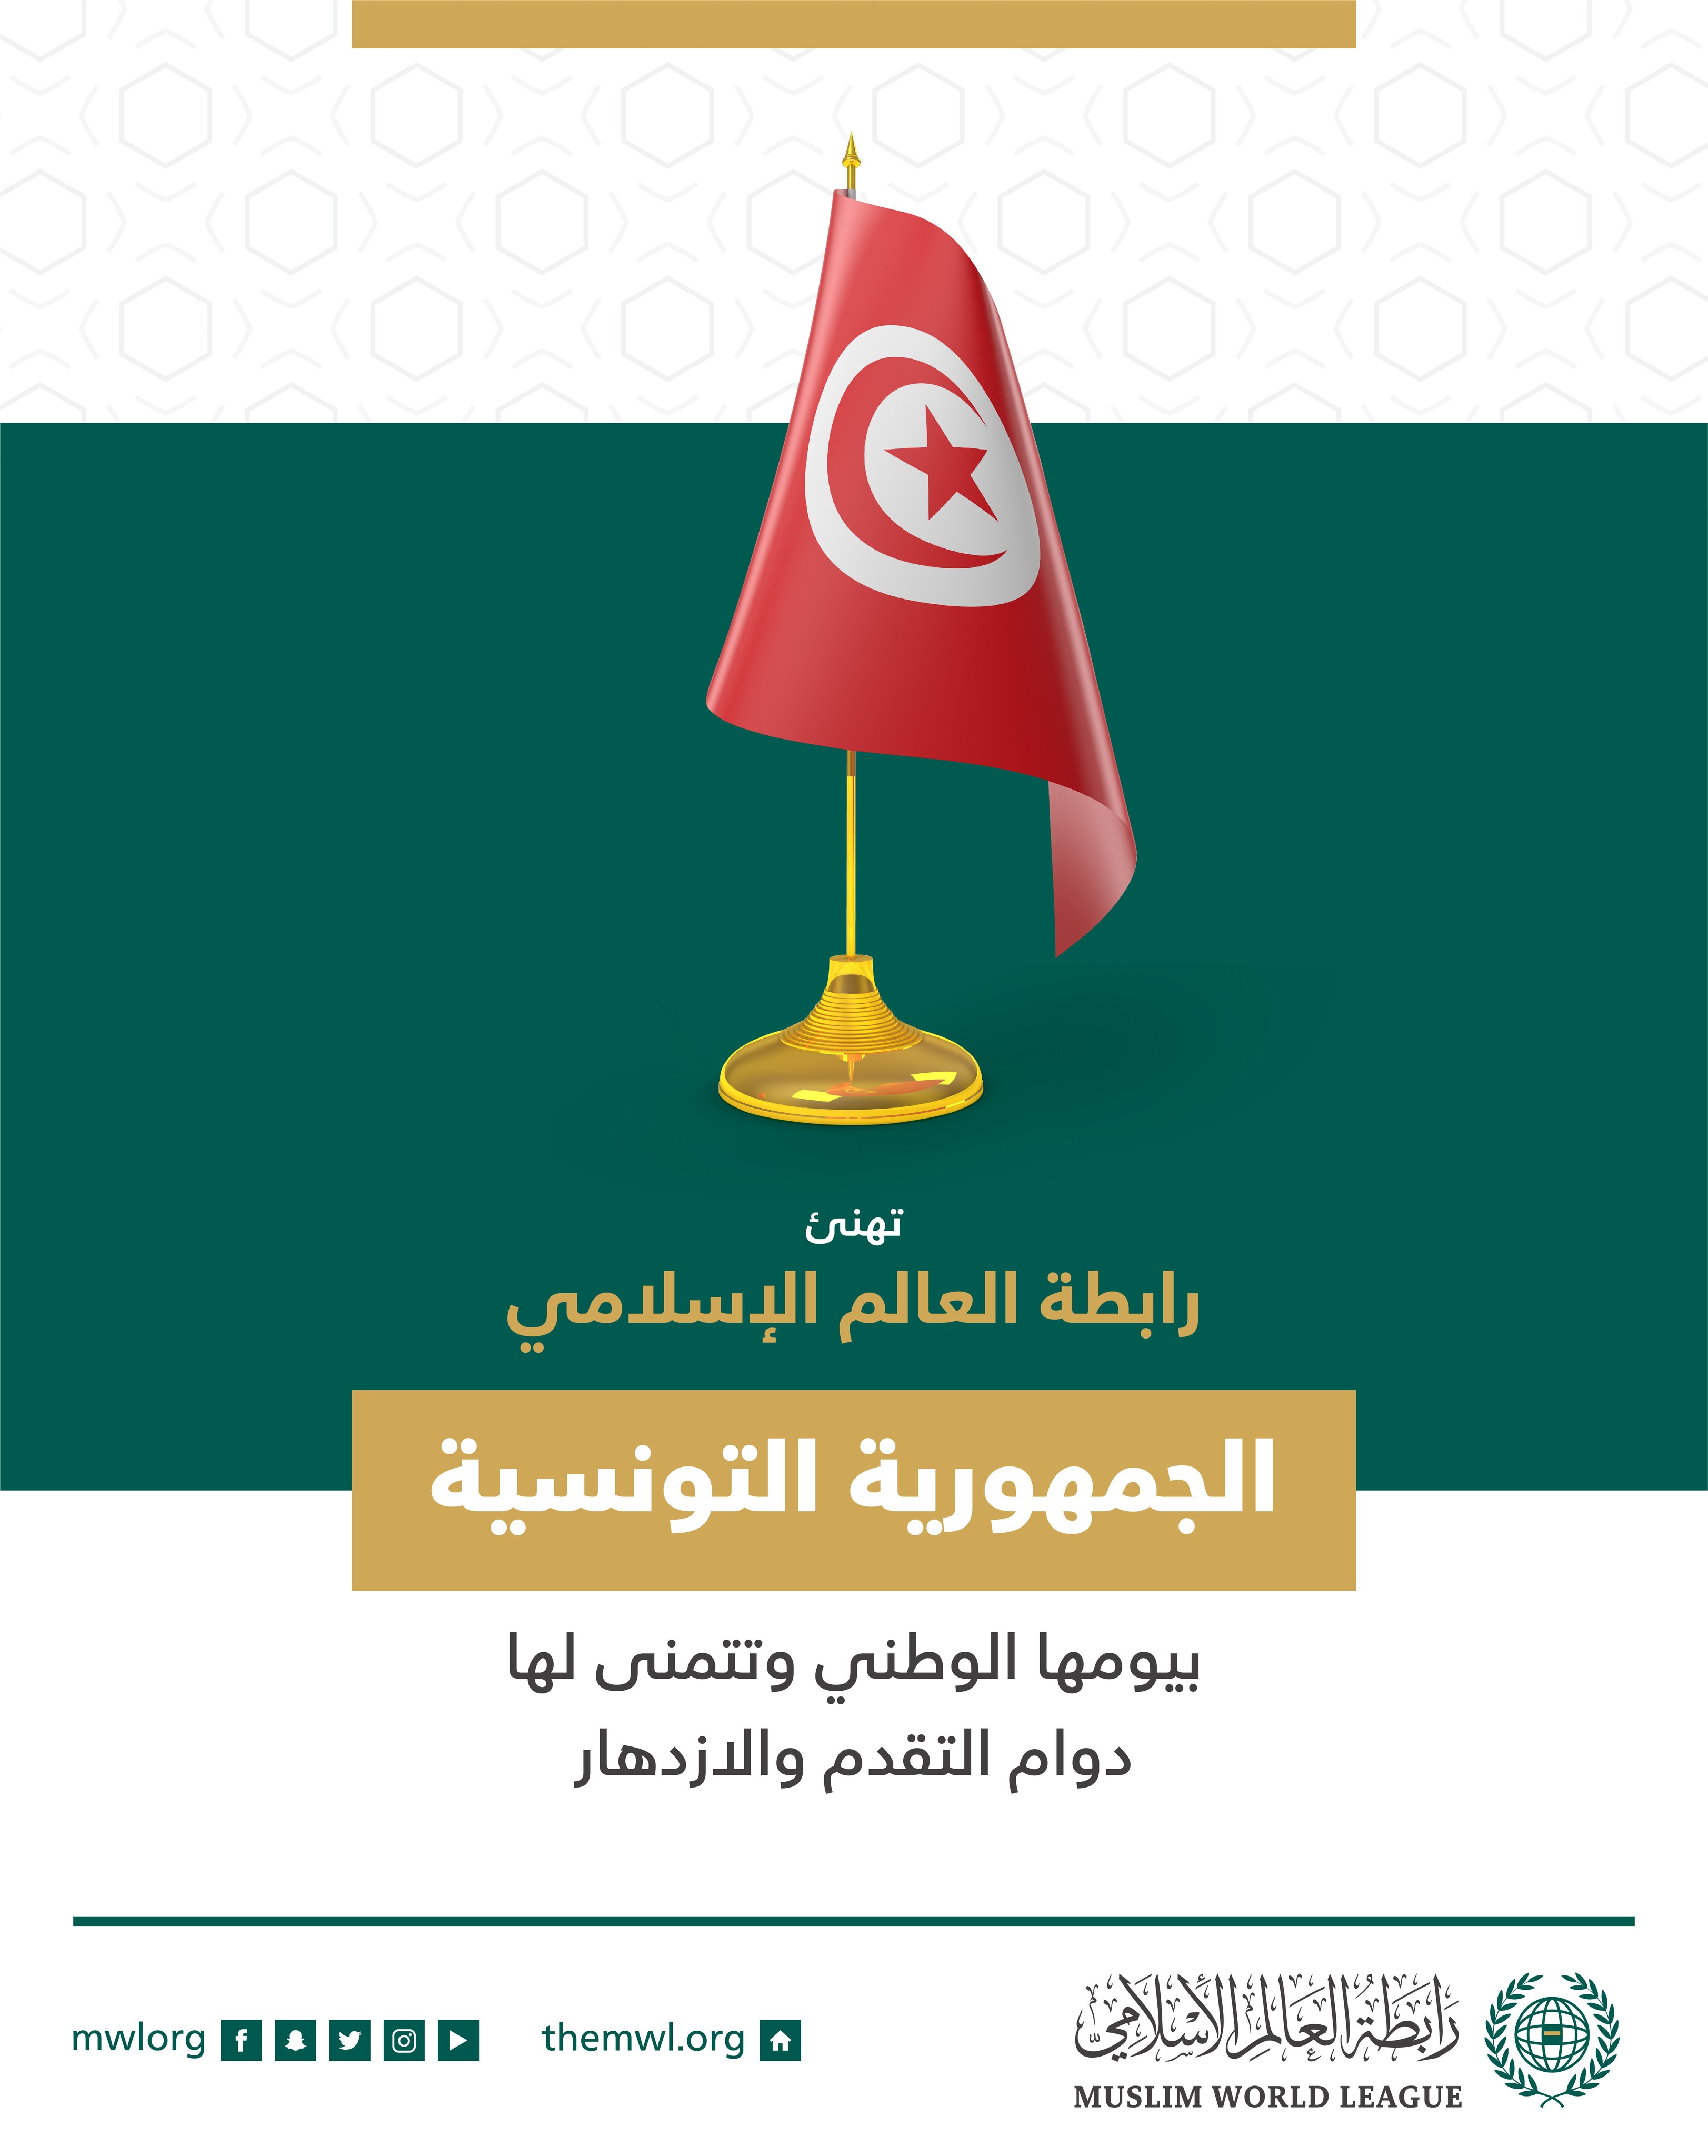 ‏تهنئ رابطة العالم الإسلامي‬⁩ جمهورية تونس‬⁩ بذكرى يومها الوطني.